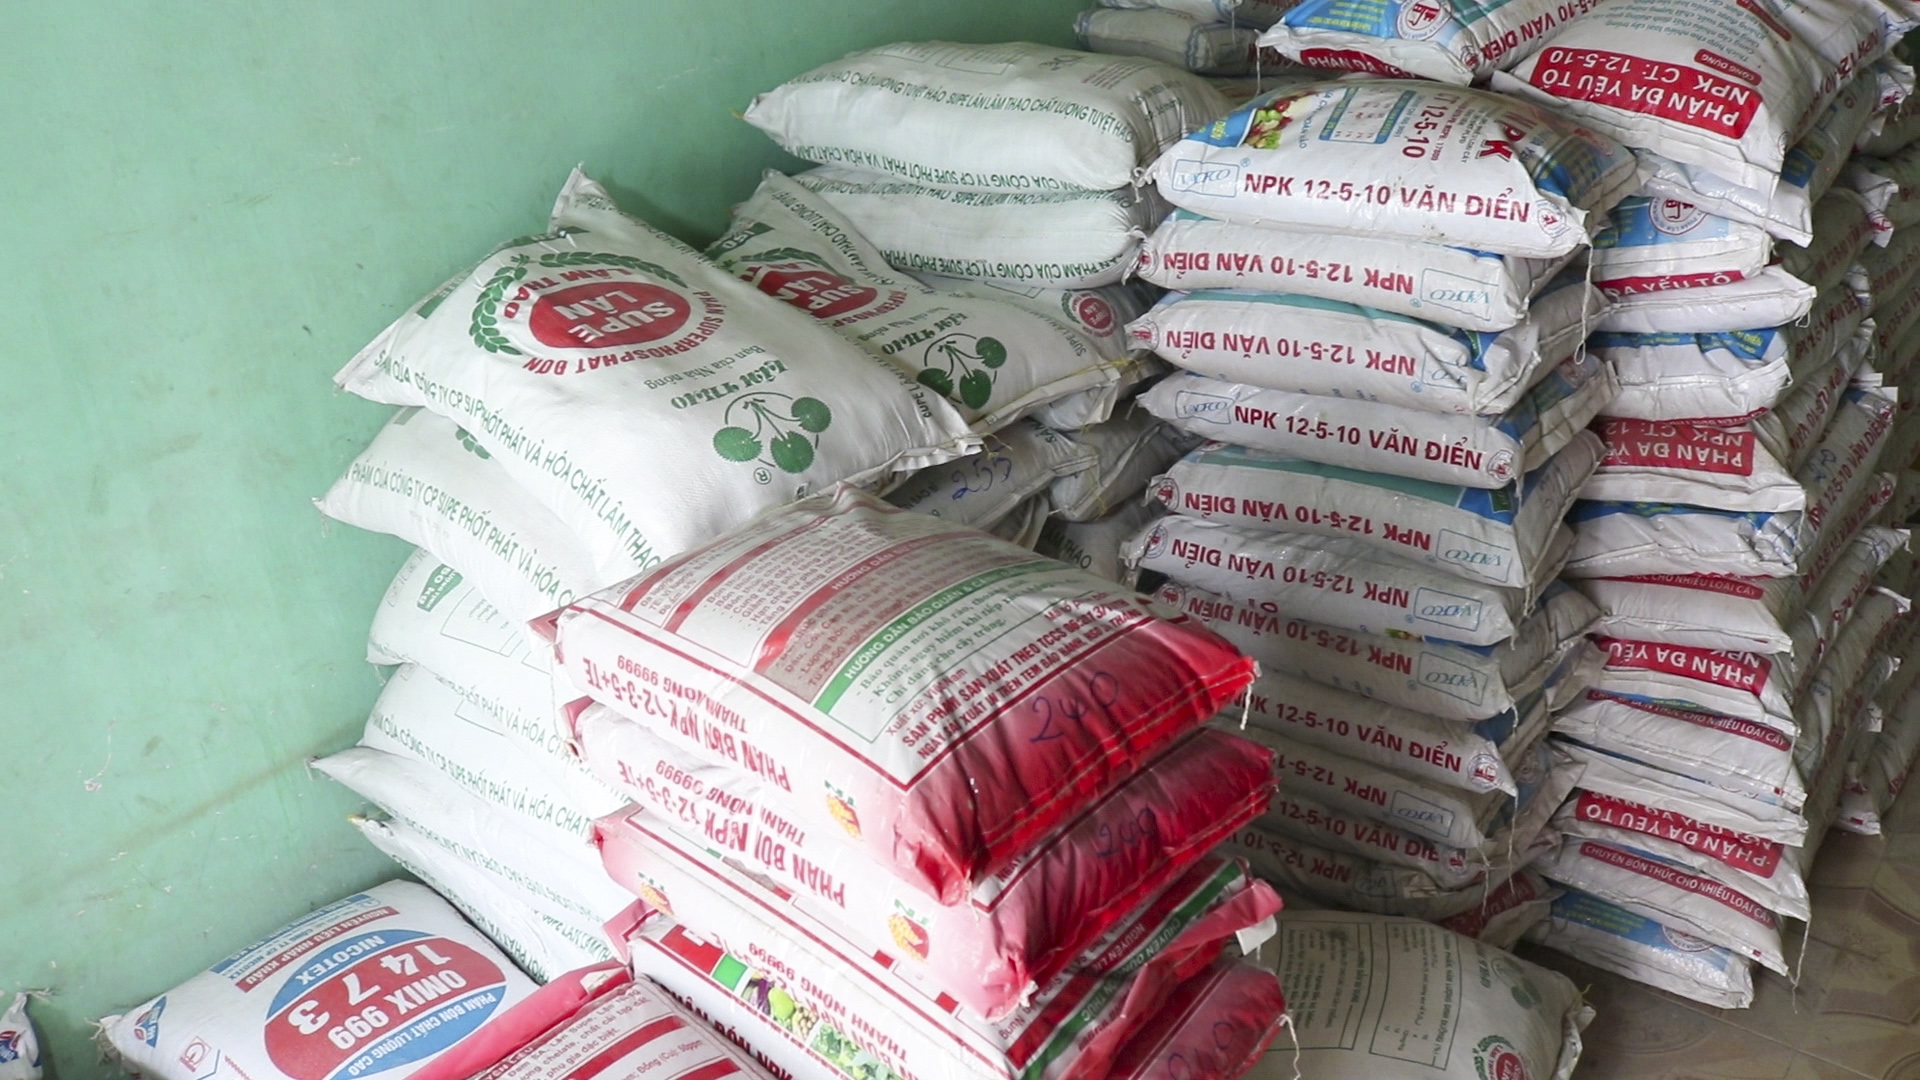 Giá phân bón tăng cao, người dân huyện Hoàng Su Phì gặp khó khăn trong sản xuất vụ mùa